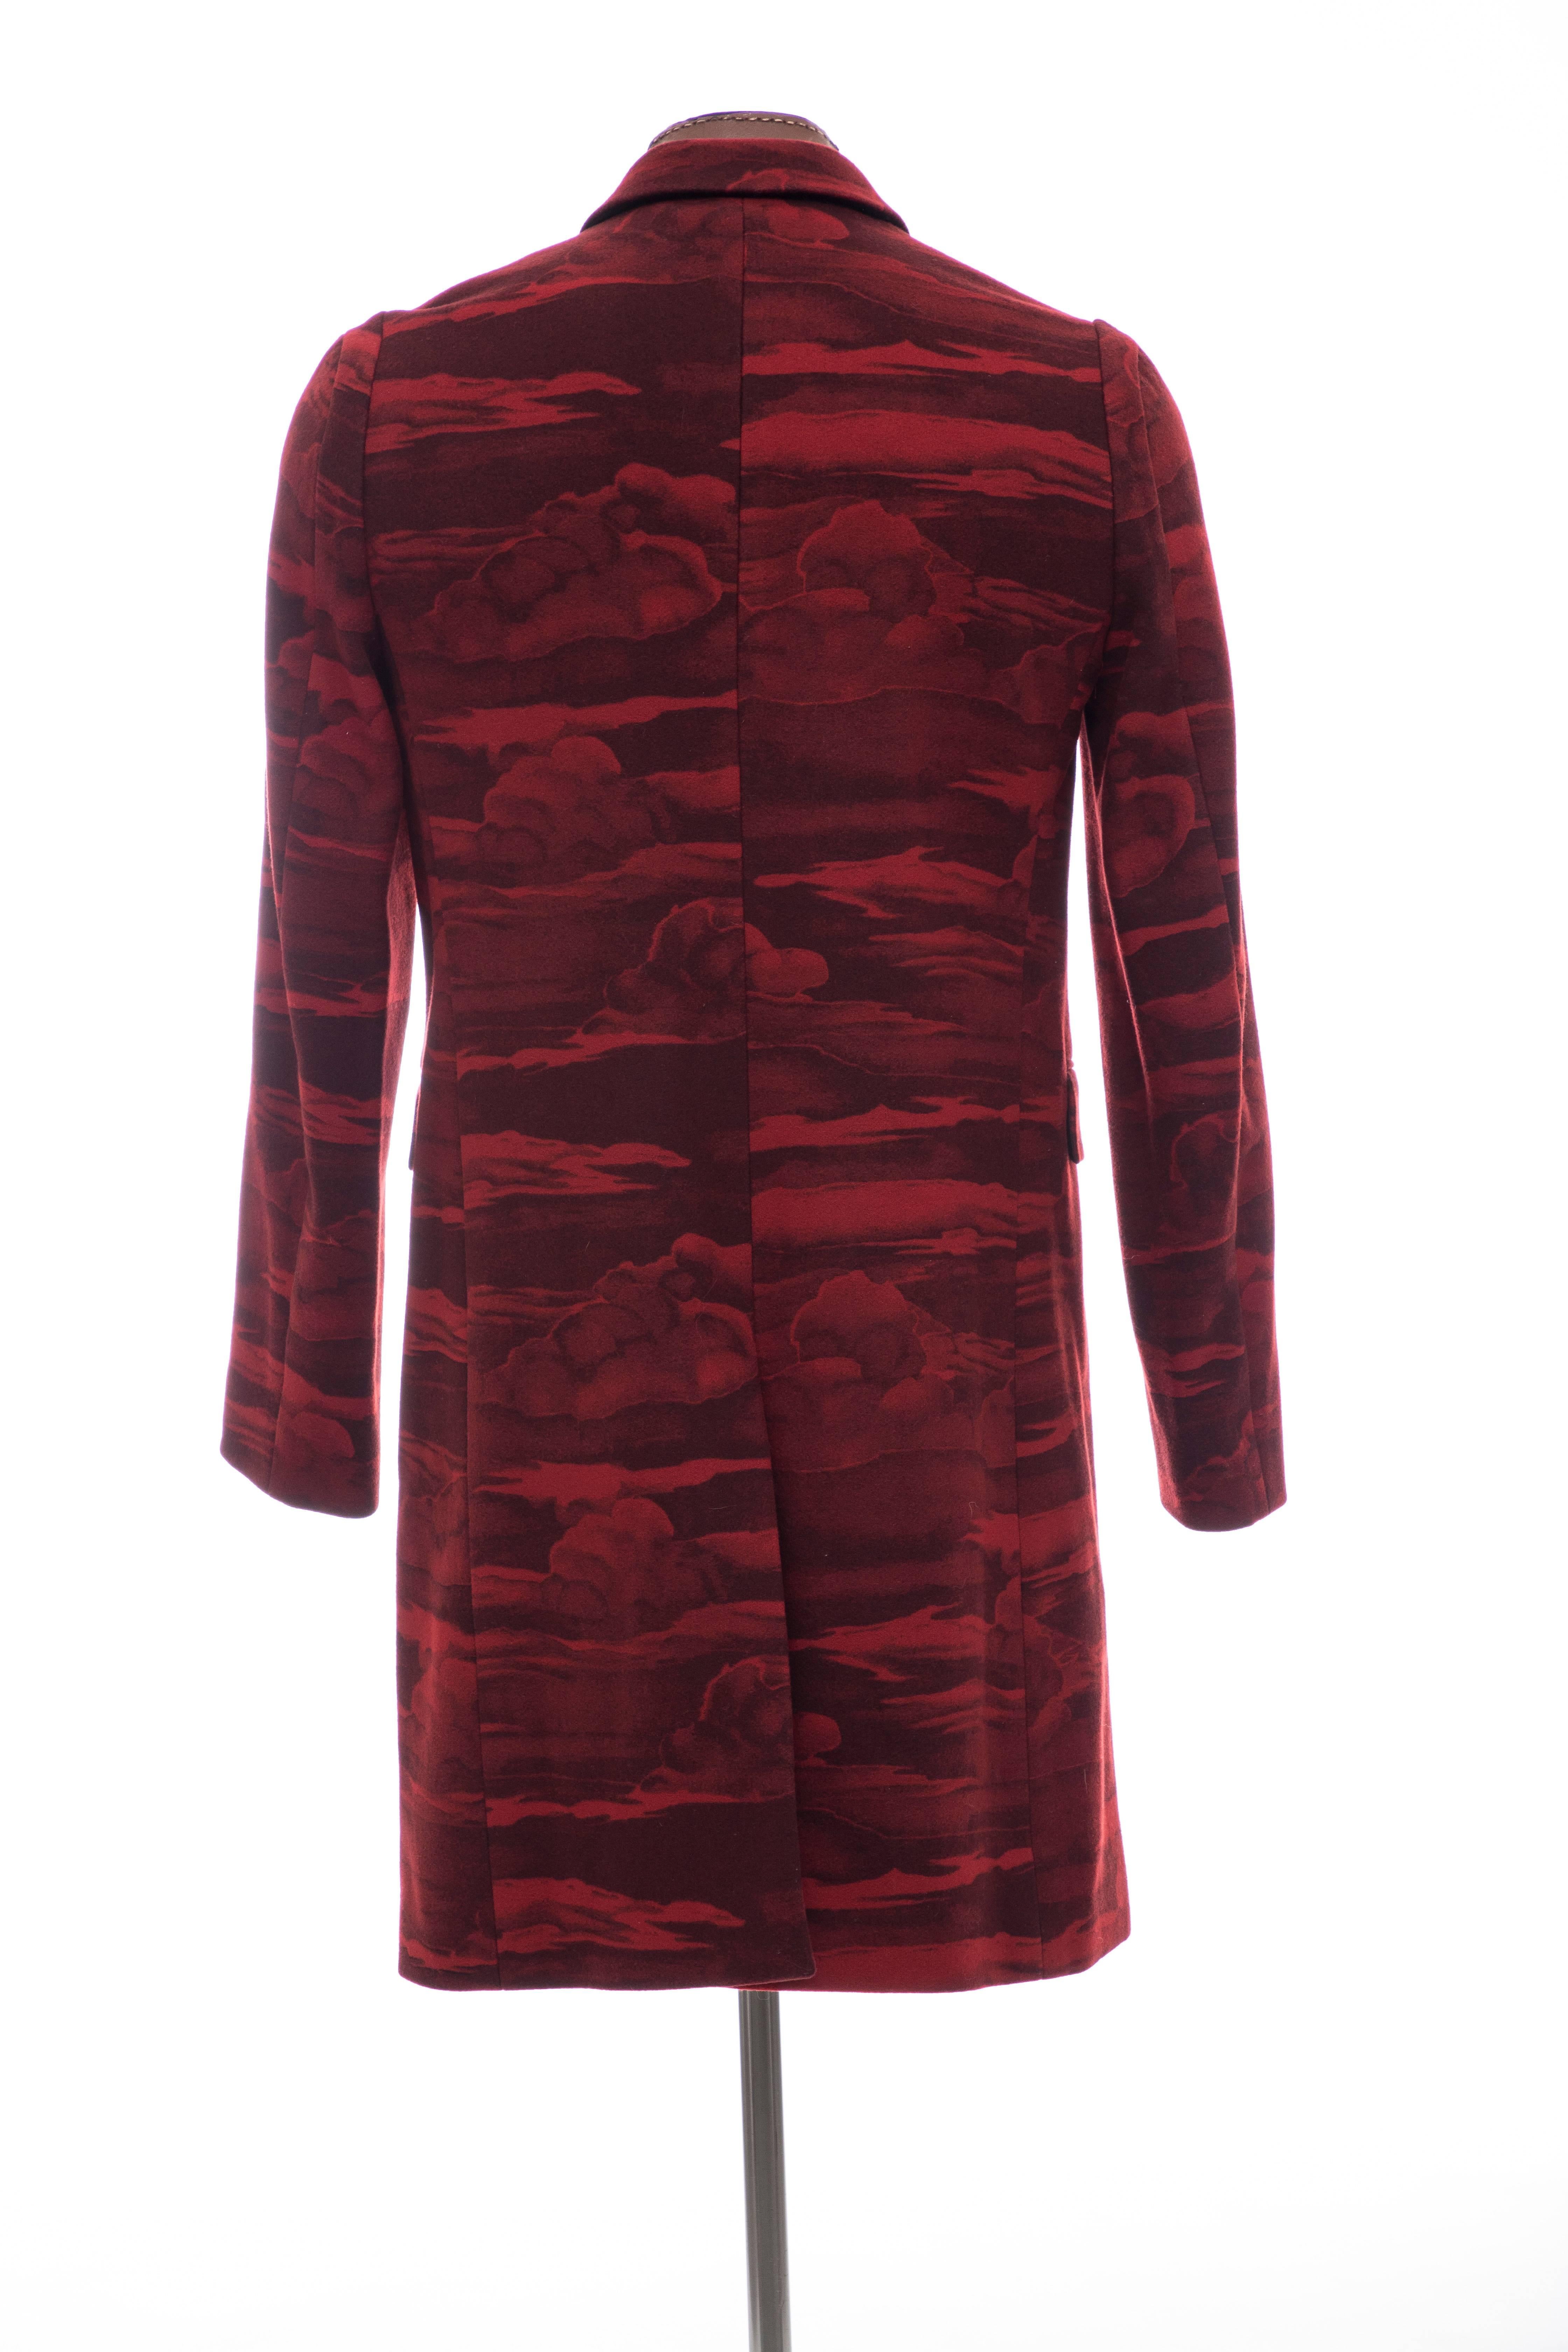 Kenzo Men's Runway Wool Red Cloud Print Coat, Fall 2013 6